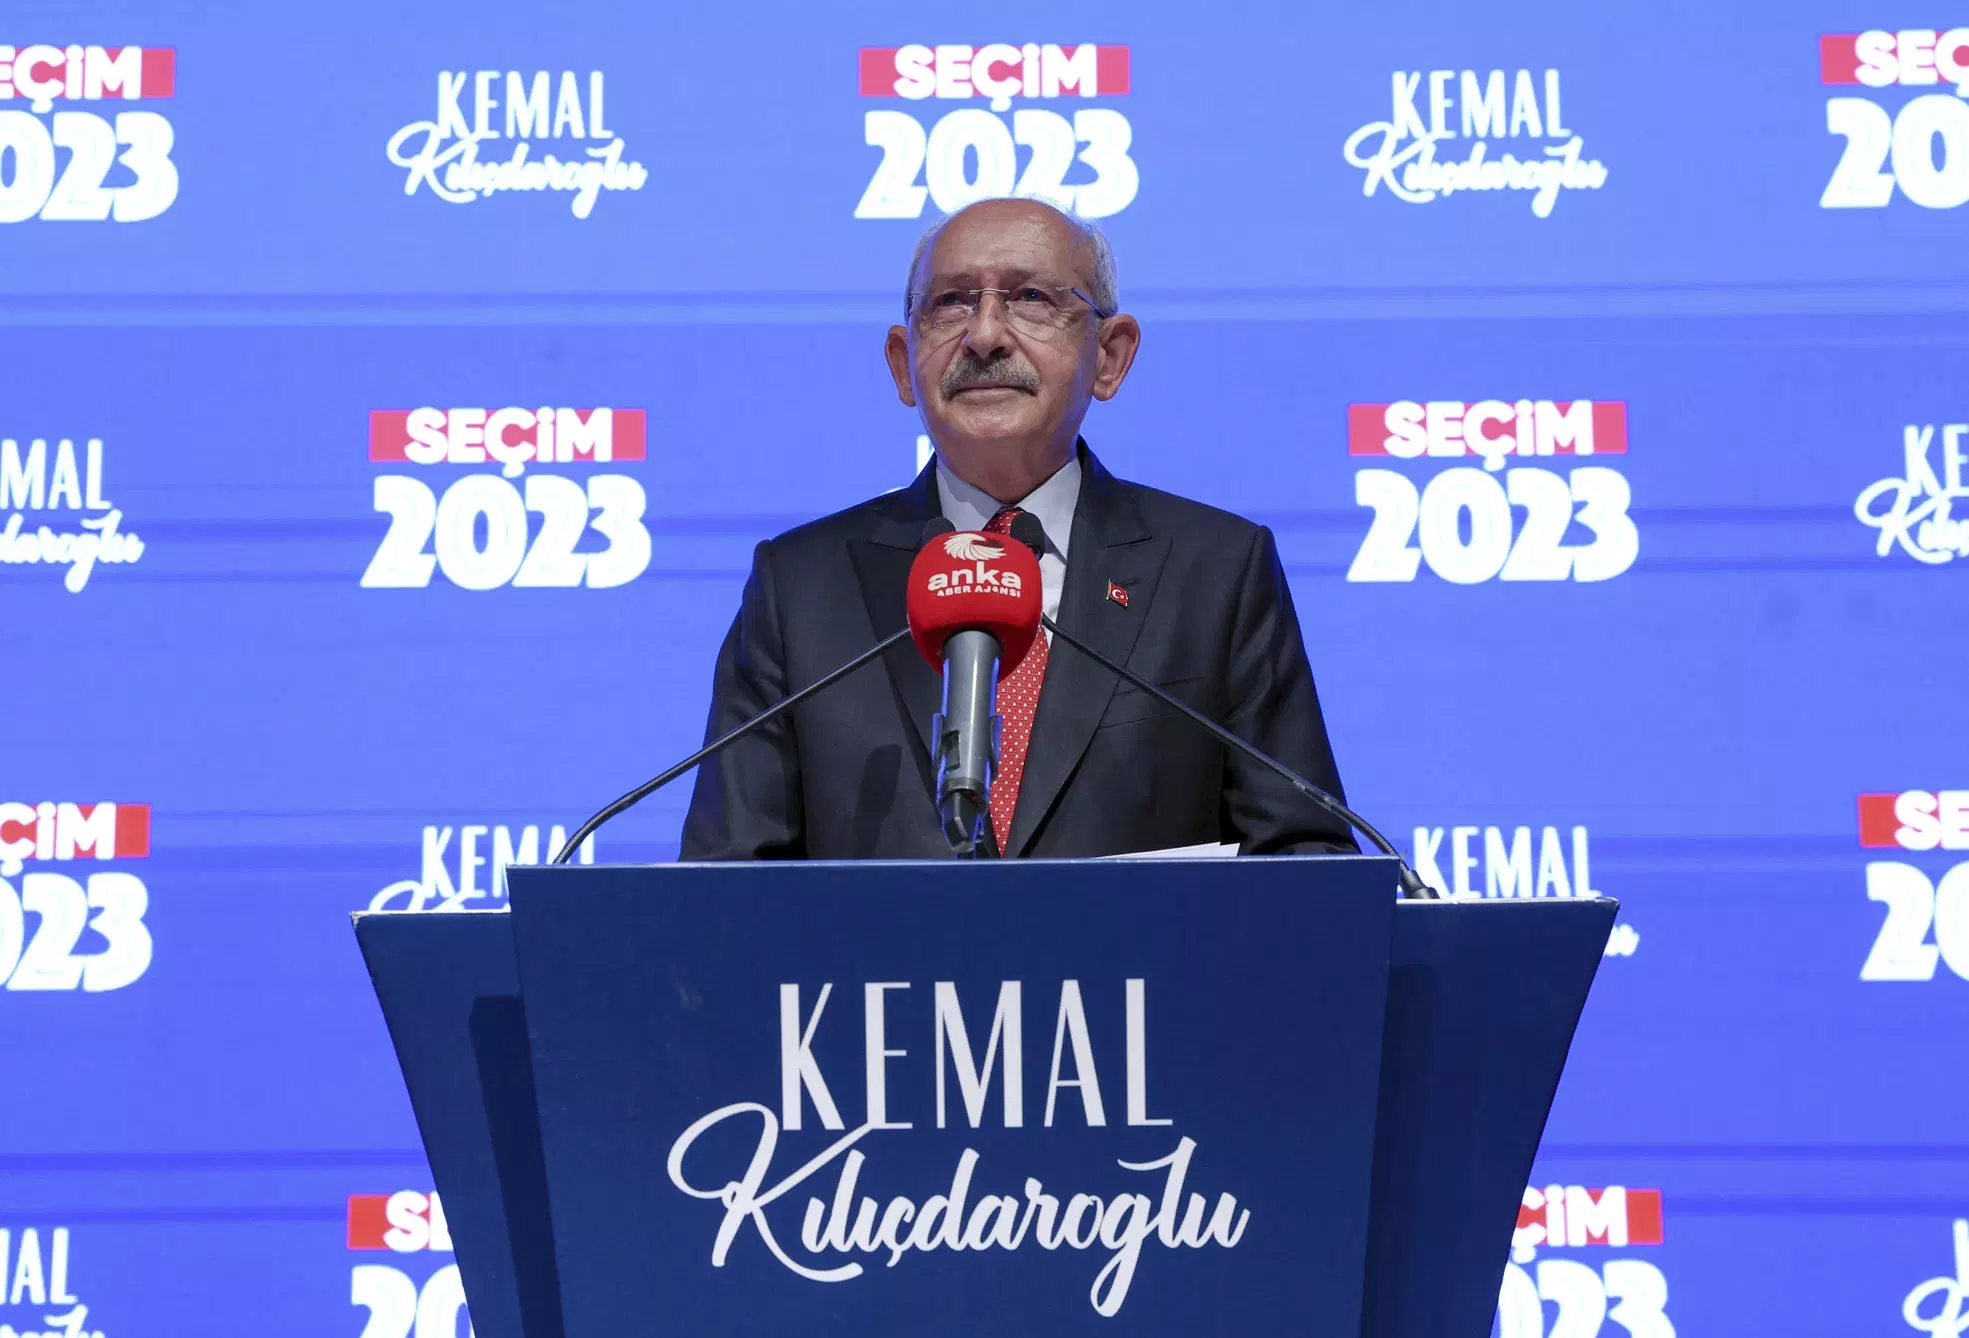 Kemal Kilicdaroglu berbicara di markas CHP, di Ankara, Turki, Minggu malam, 28 Mei 2023. Kilicdaroglu adalah kandidat dari aliansi oposisi enam partai sekaligus pemimpin Partai Rakyat Republik (CHP) sebagai saingan Erdogan.